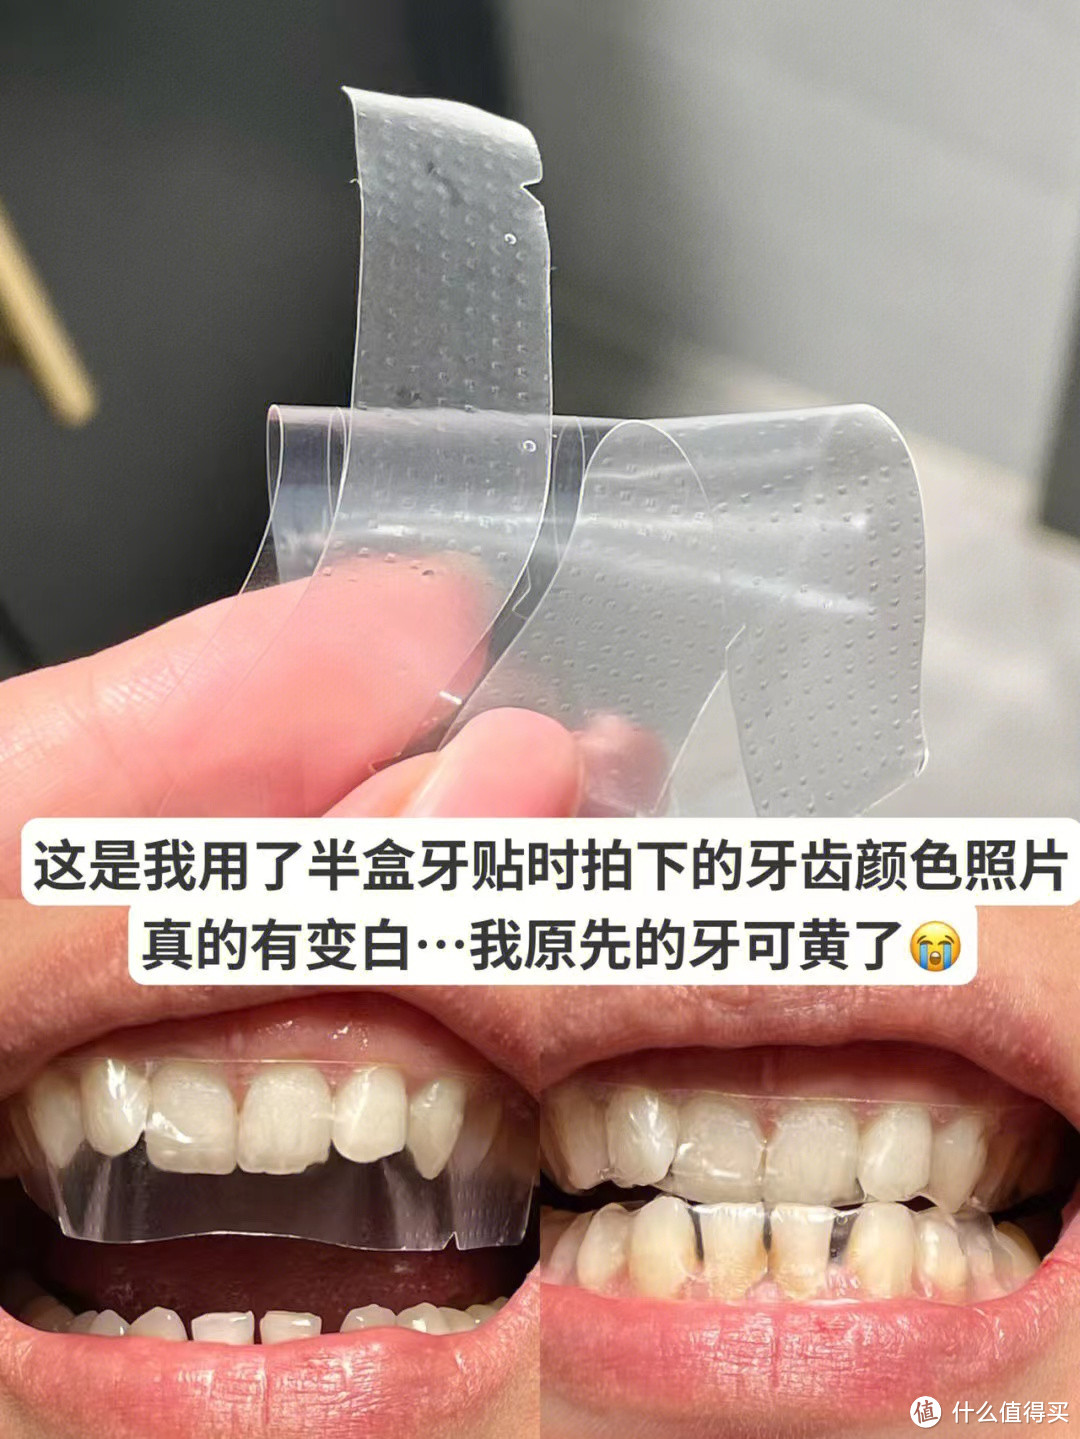 里面的成分可以分解牙垢 烟渍茶渍等 针对外源性黄牙 含护敏因子不会酸牙